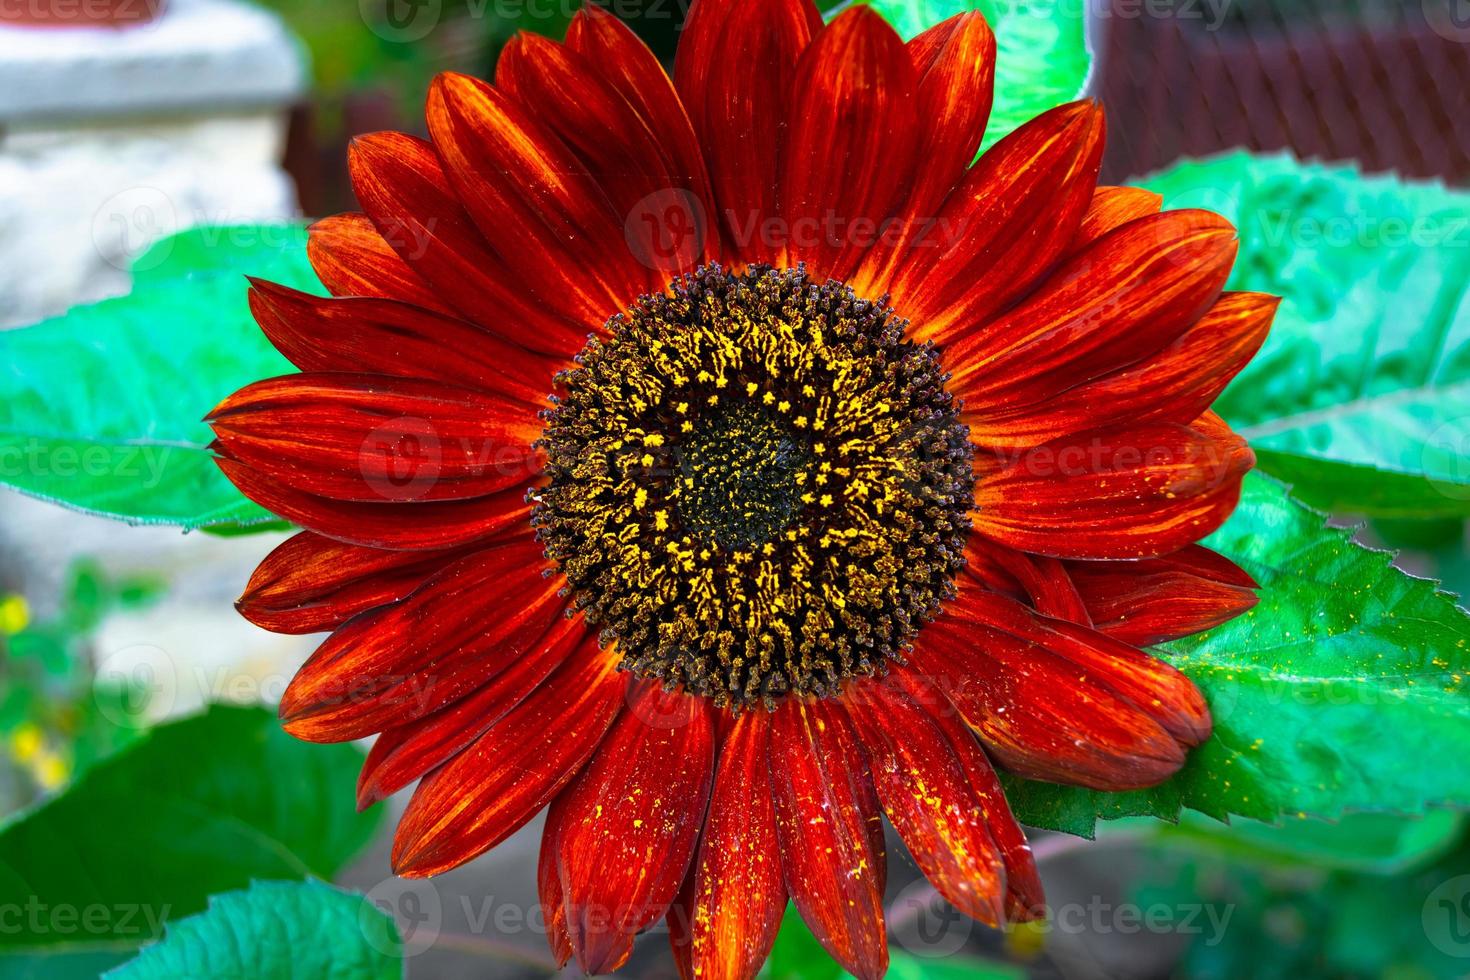 un hermoso girasol decorativo de color rojo oscuro que florece en el jardín, cubierto de polvo cubierto de polen amarillo. foto